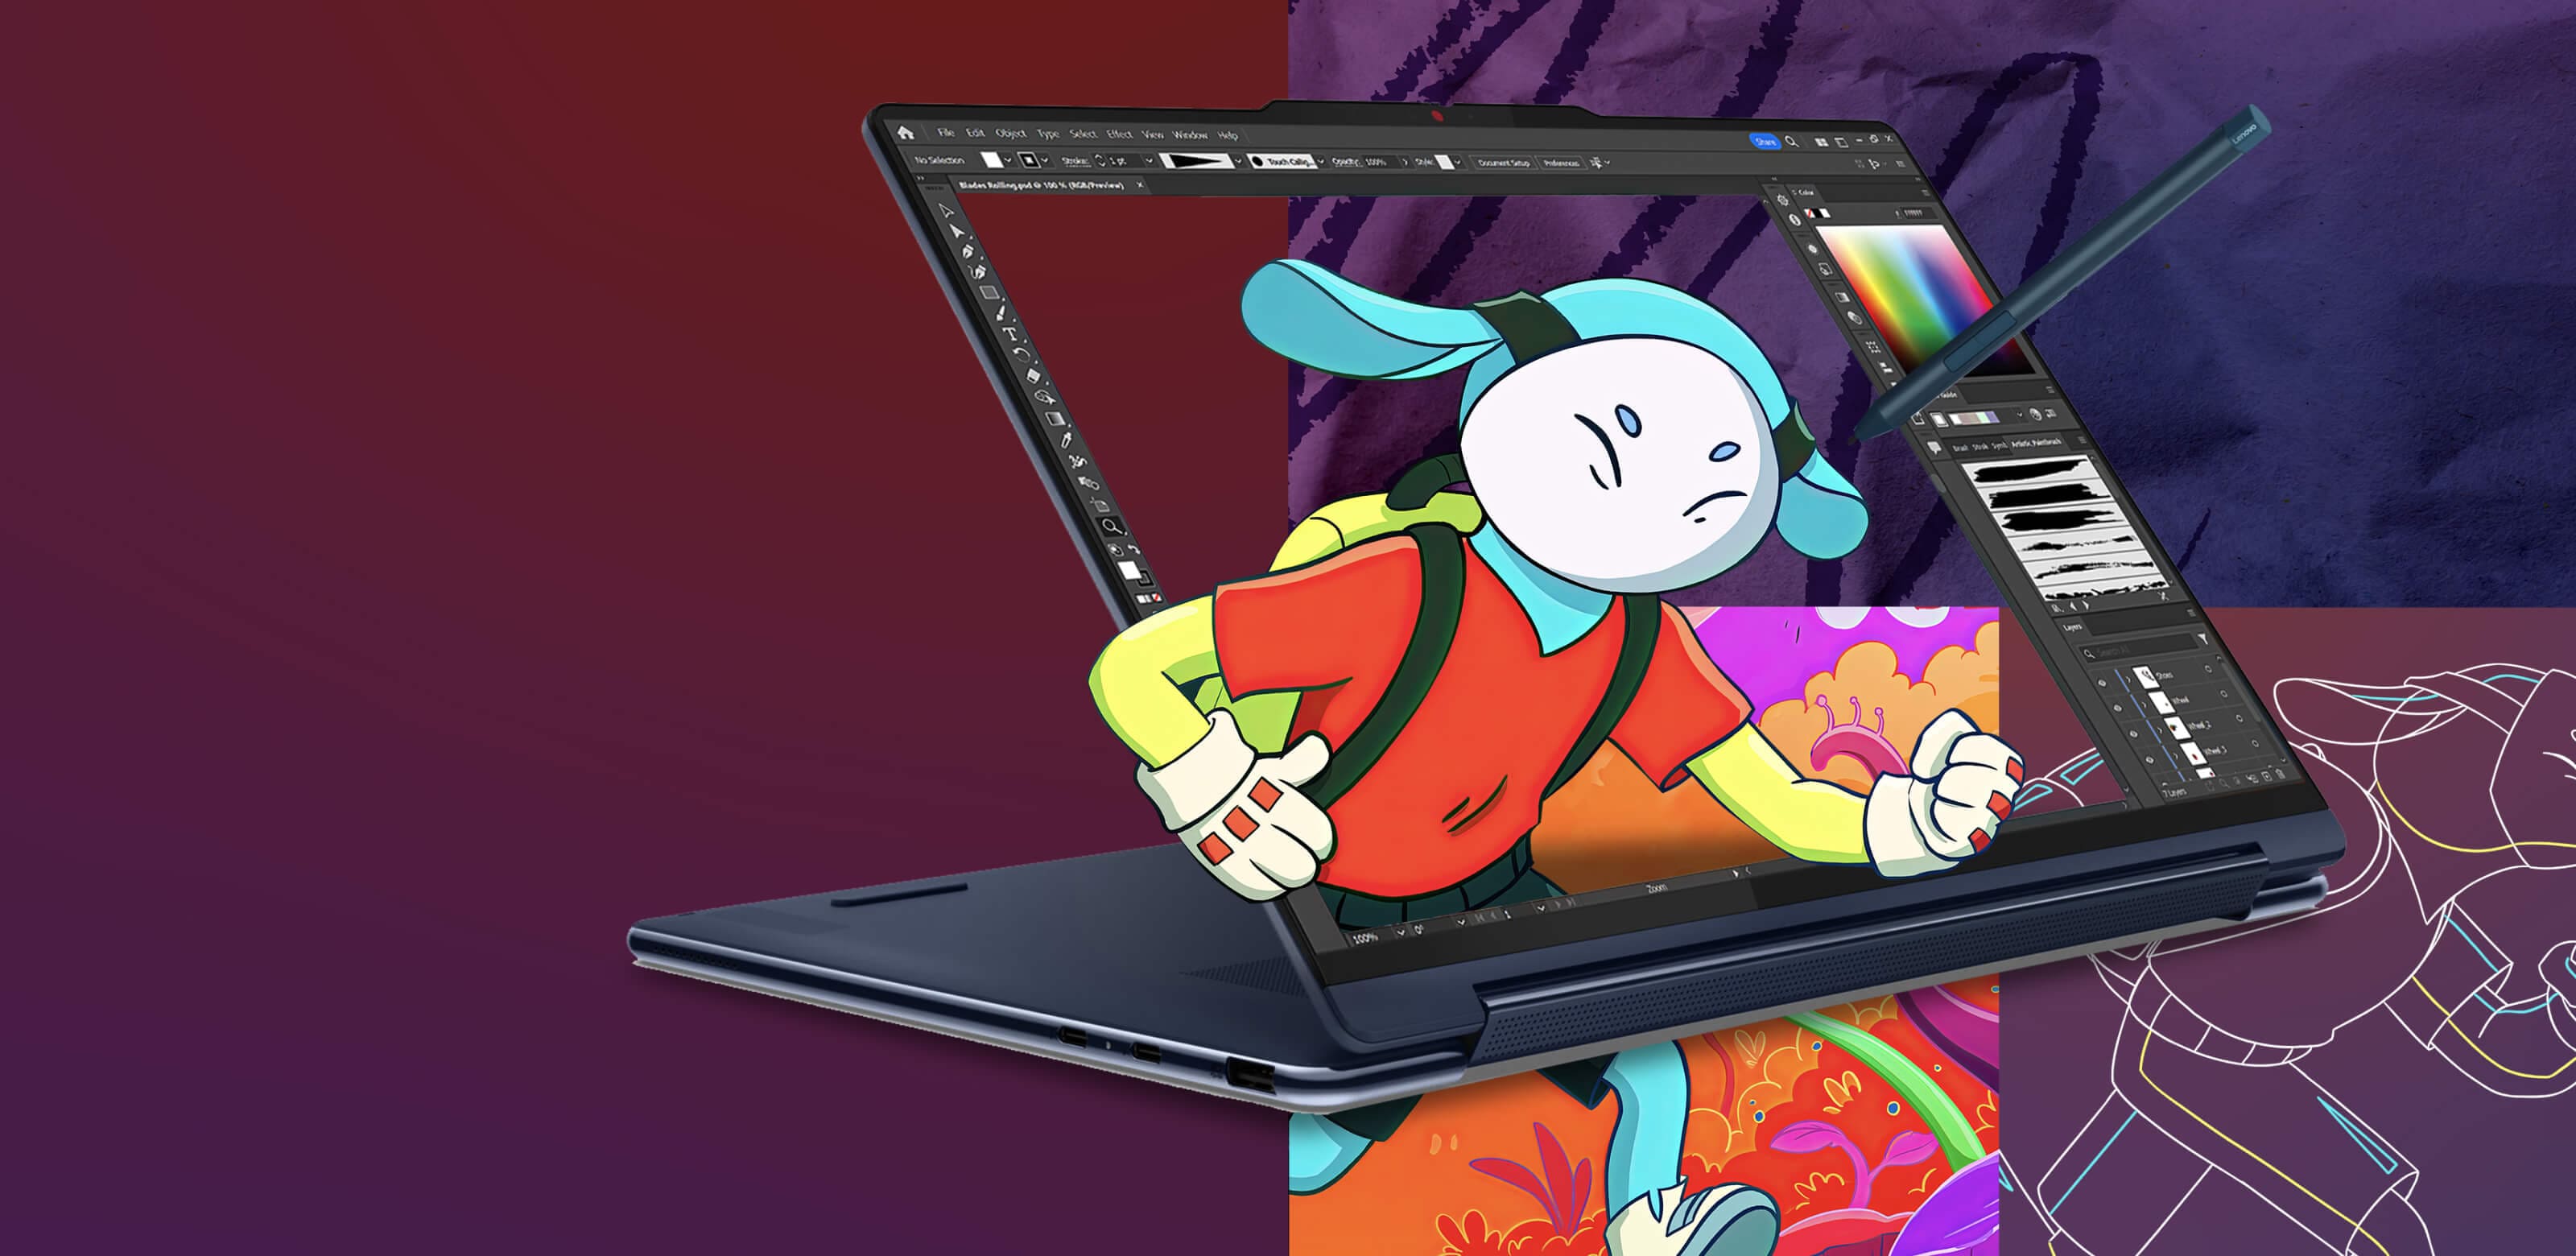 Notebook Lenovo Yoga v režimu stojanu, kdy se na obrazovce zobrazuje program pro úpravu obrázků s animovanou postavou vystupující z obrazovky.